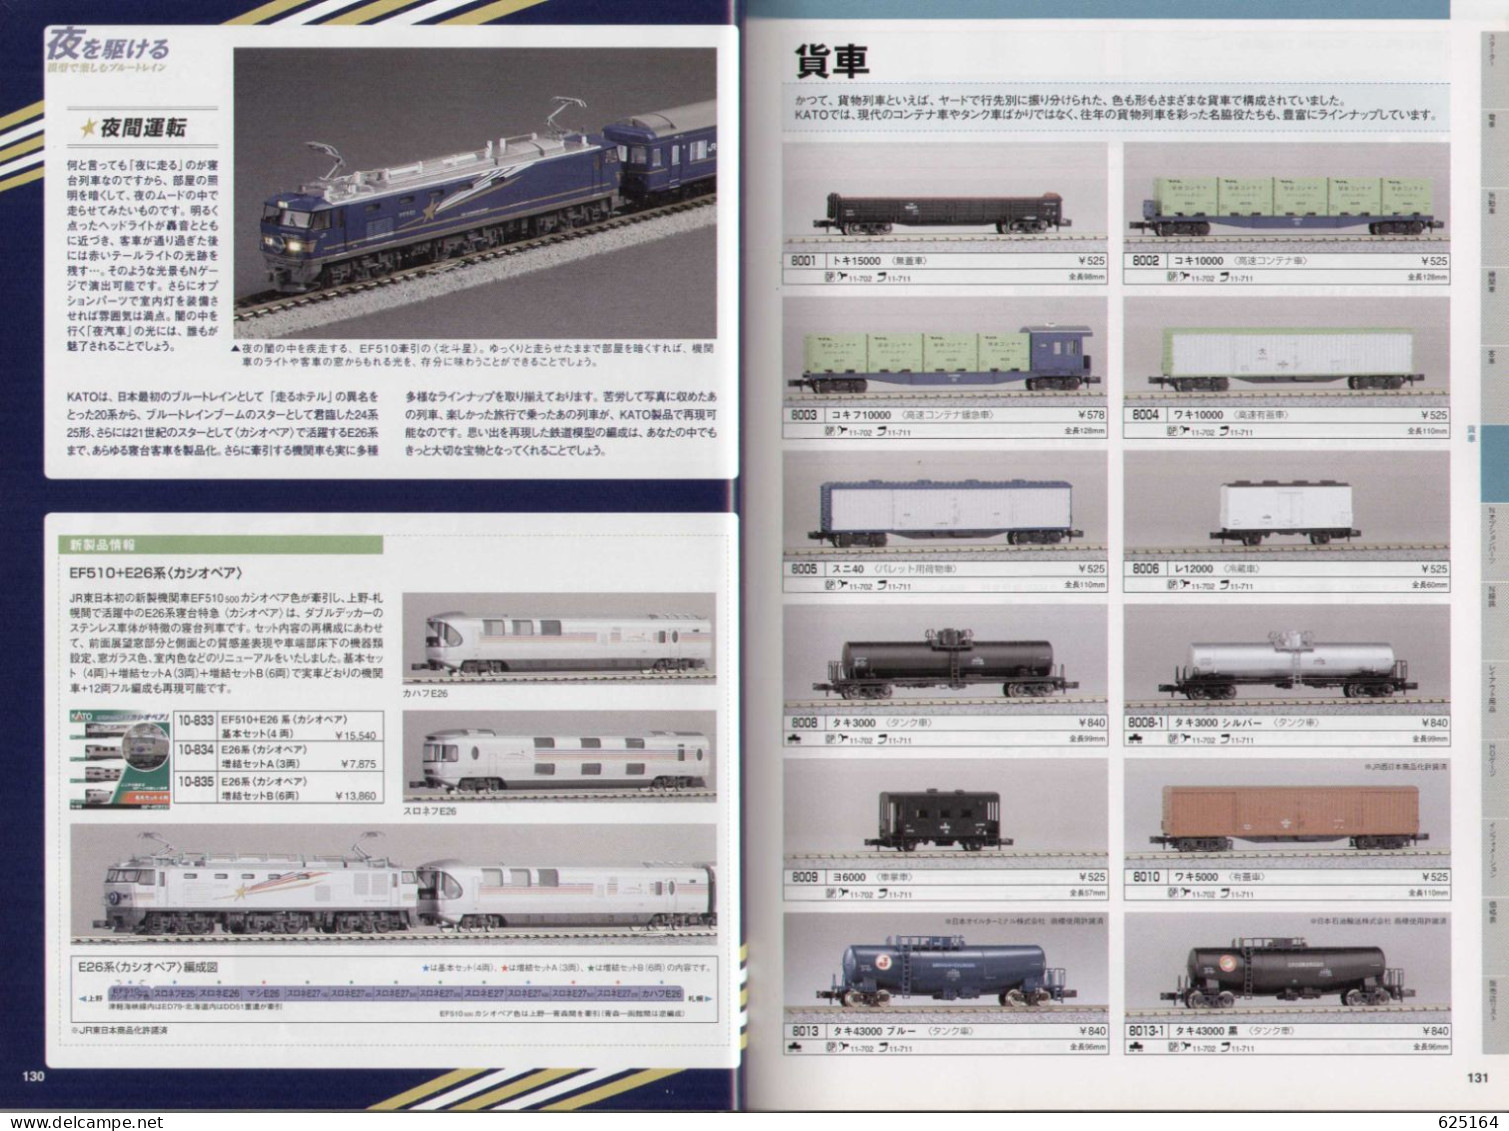 Catalogue KATO 2011 PRECISION RAILROAD MODELS - HO 1:87 - N 1:160 - En Japonais Avec Quelques Sous-titres Anglais - Sin Clasificación